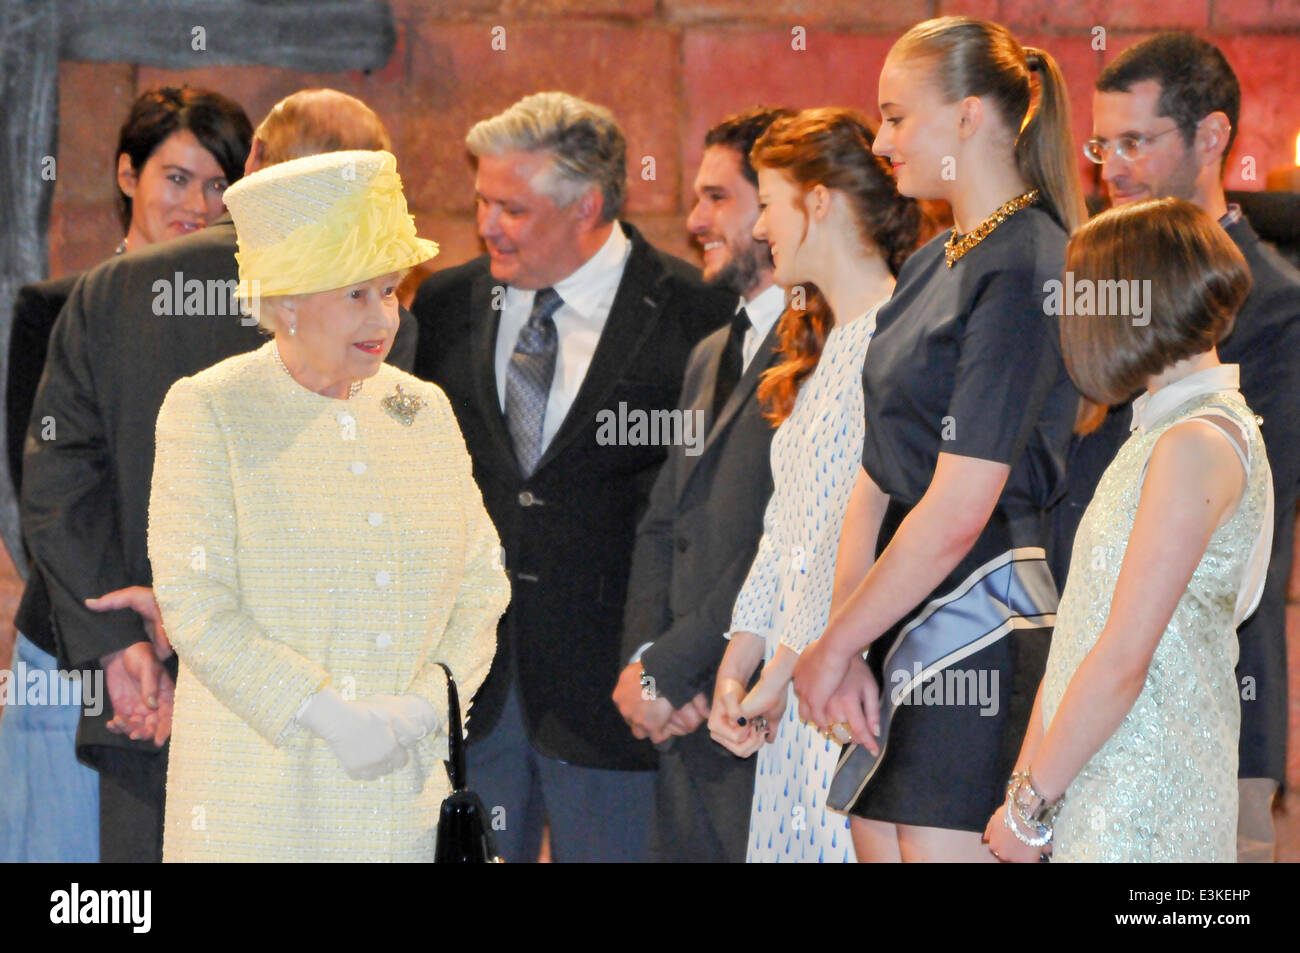 Belfast, Nordirland. 24. Juni 2014 - spricht ihre Majestät Königin Elizabeth II mit Game of Thrones Schauspieler Maisie Williams, wie sie den Filmstudios in Belfast Besuche. Bildnachweis: Stephen Barnes/Alamy Live-Nachrichten Stockfoto